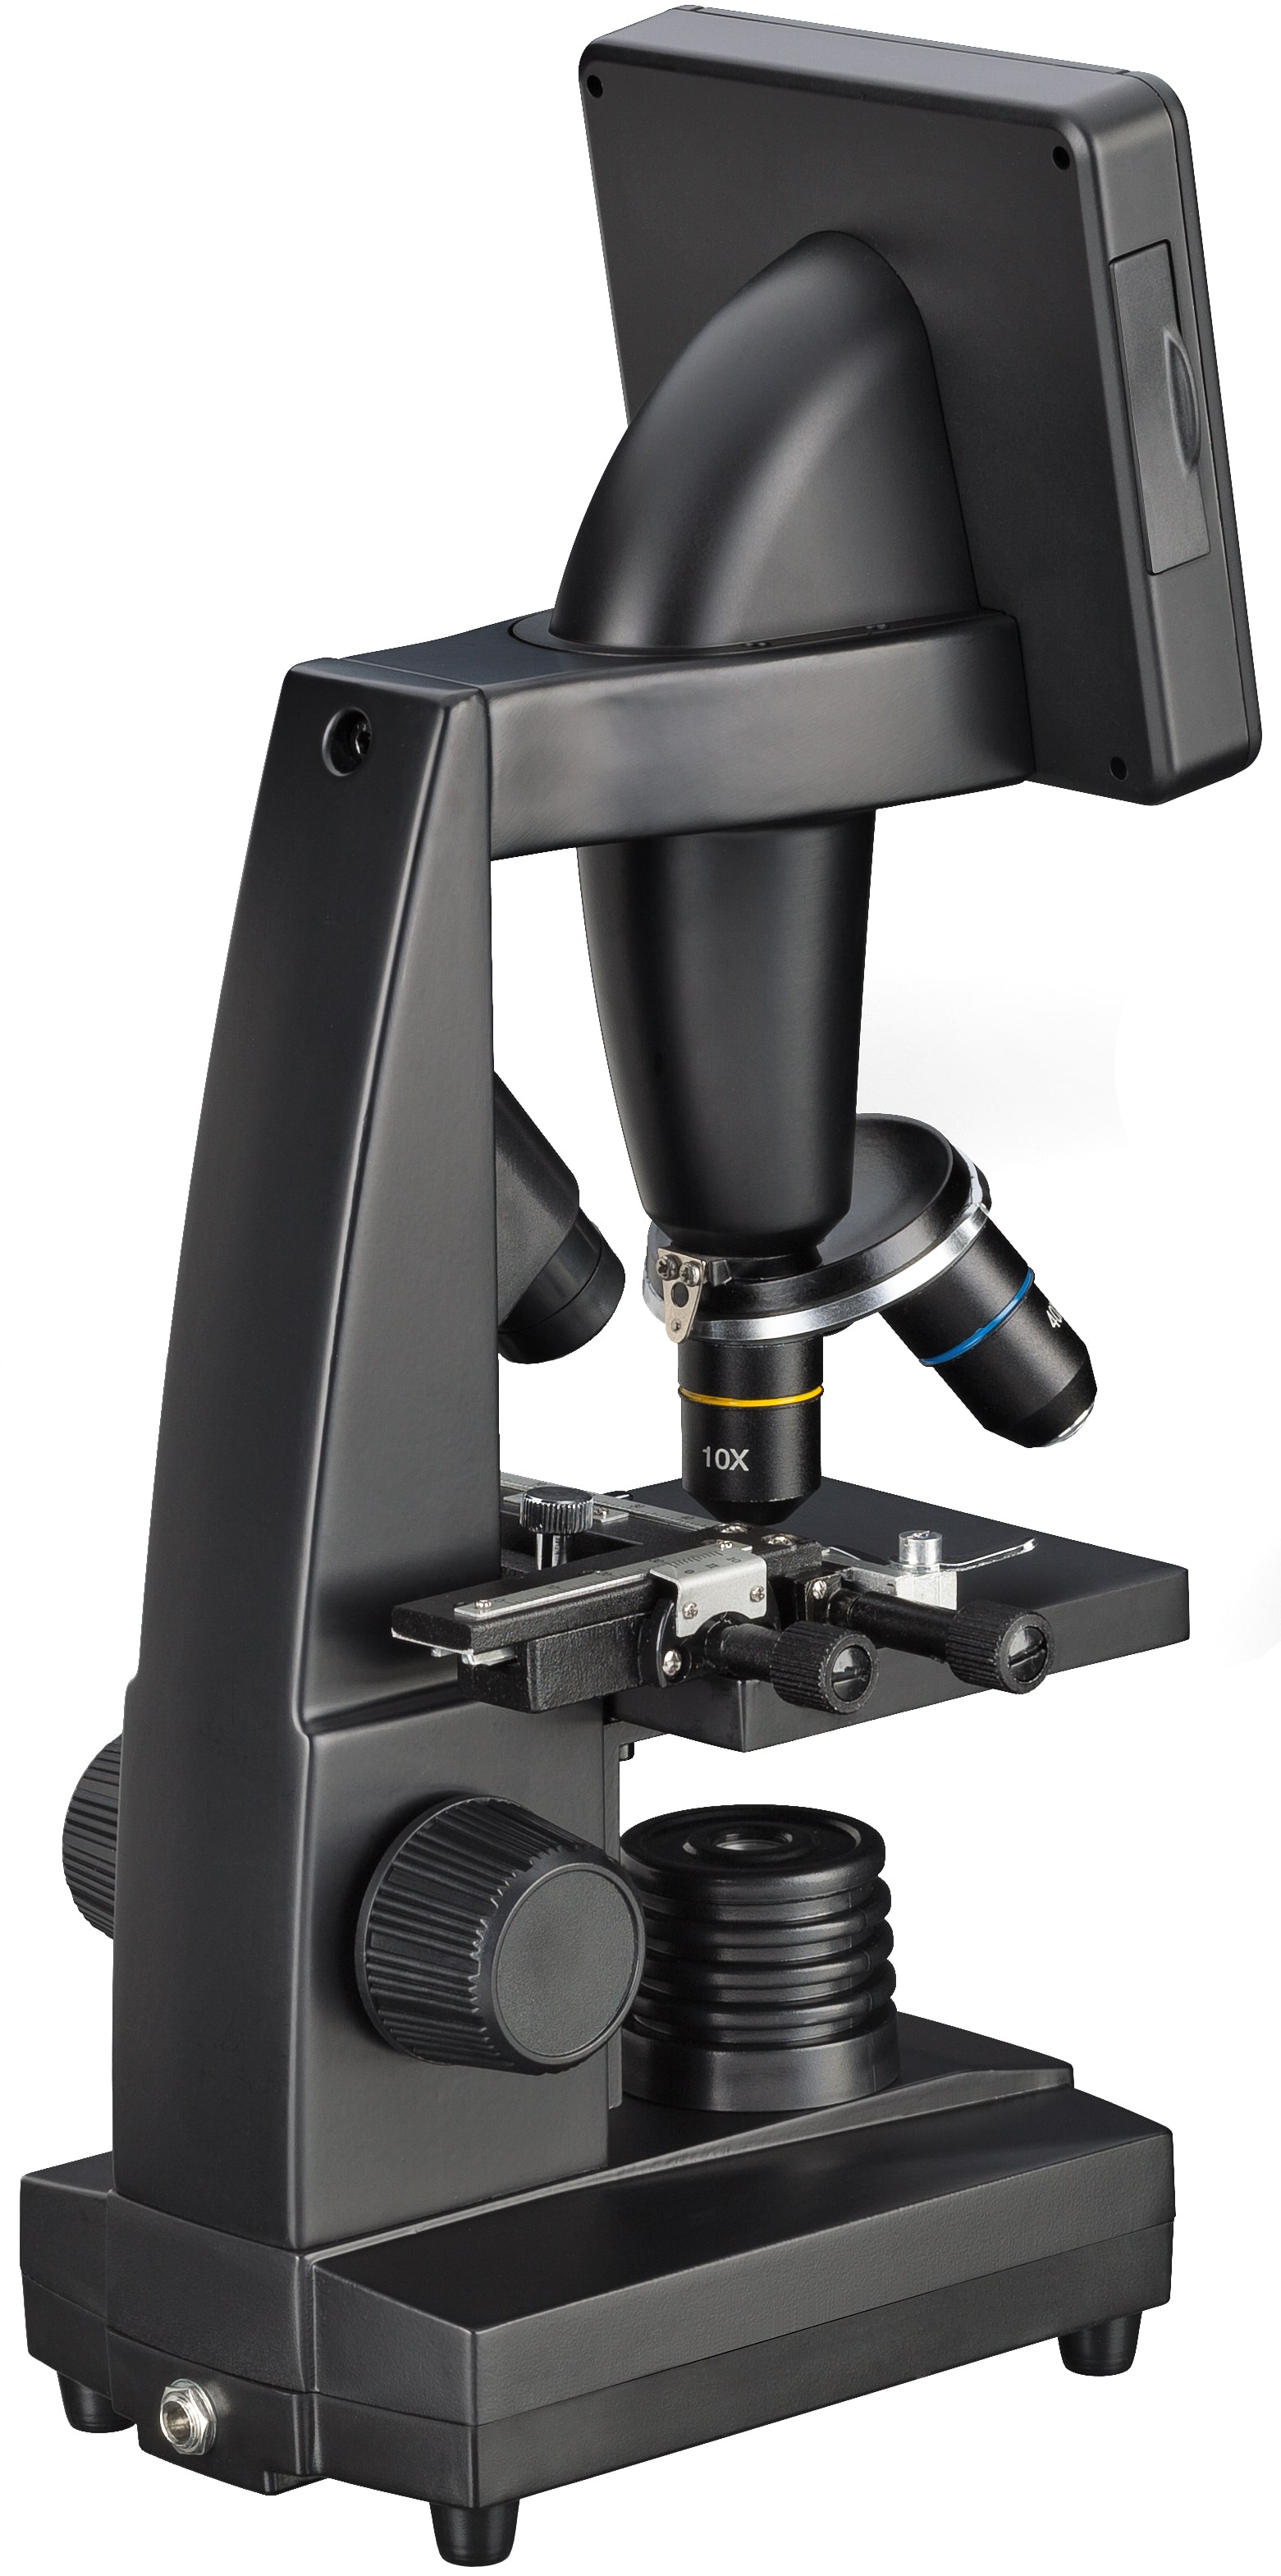   Grazie al suo schermo integrato, con il microscopio LCD Bresser possono osservare anche più persone contemporaneamente.  